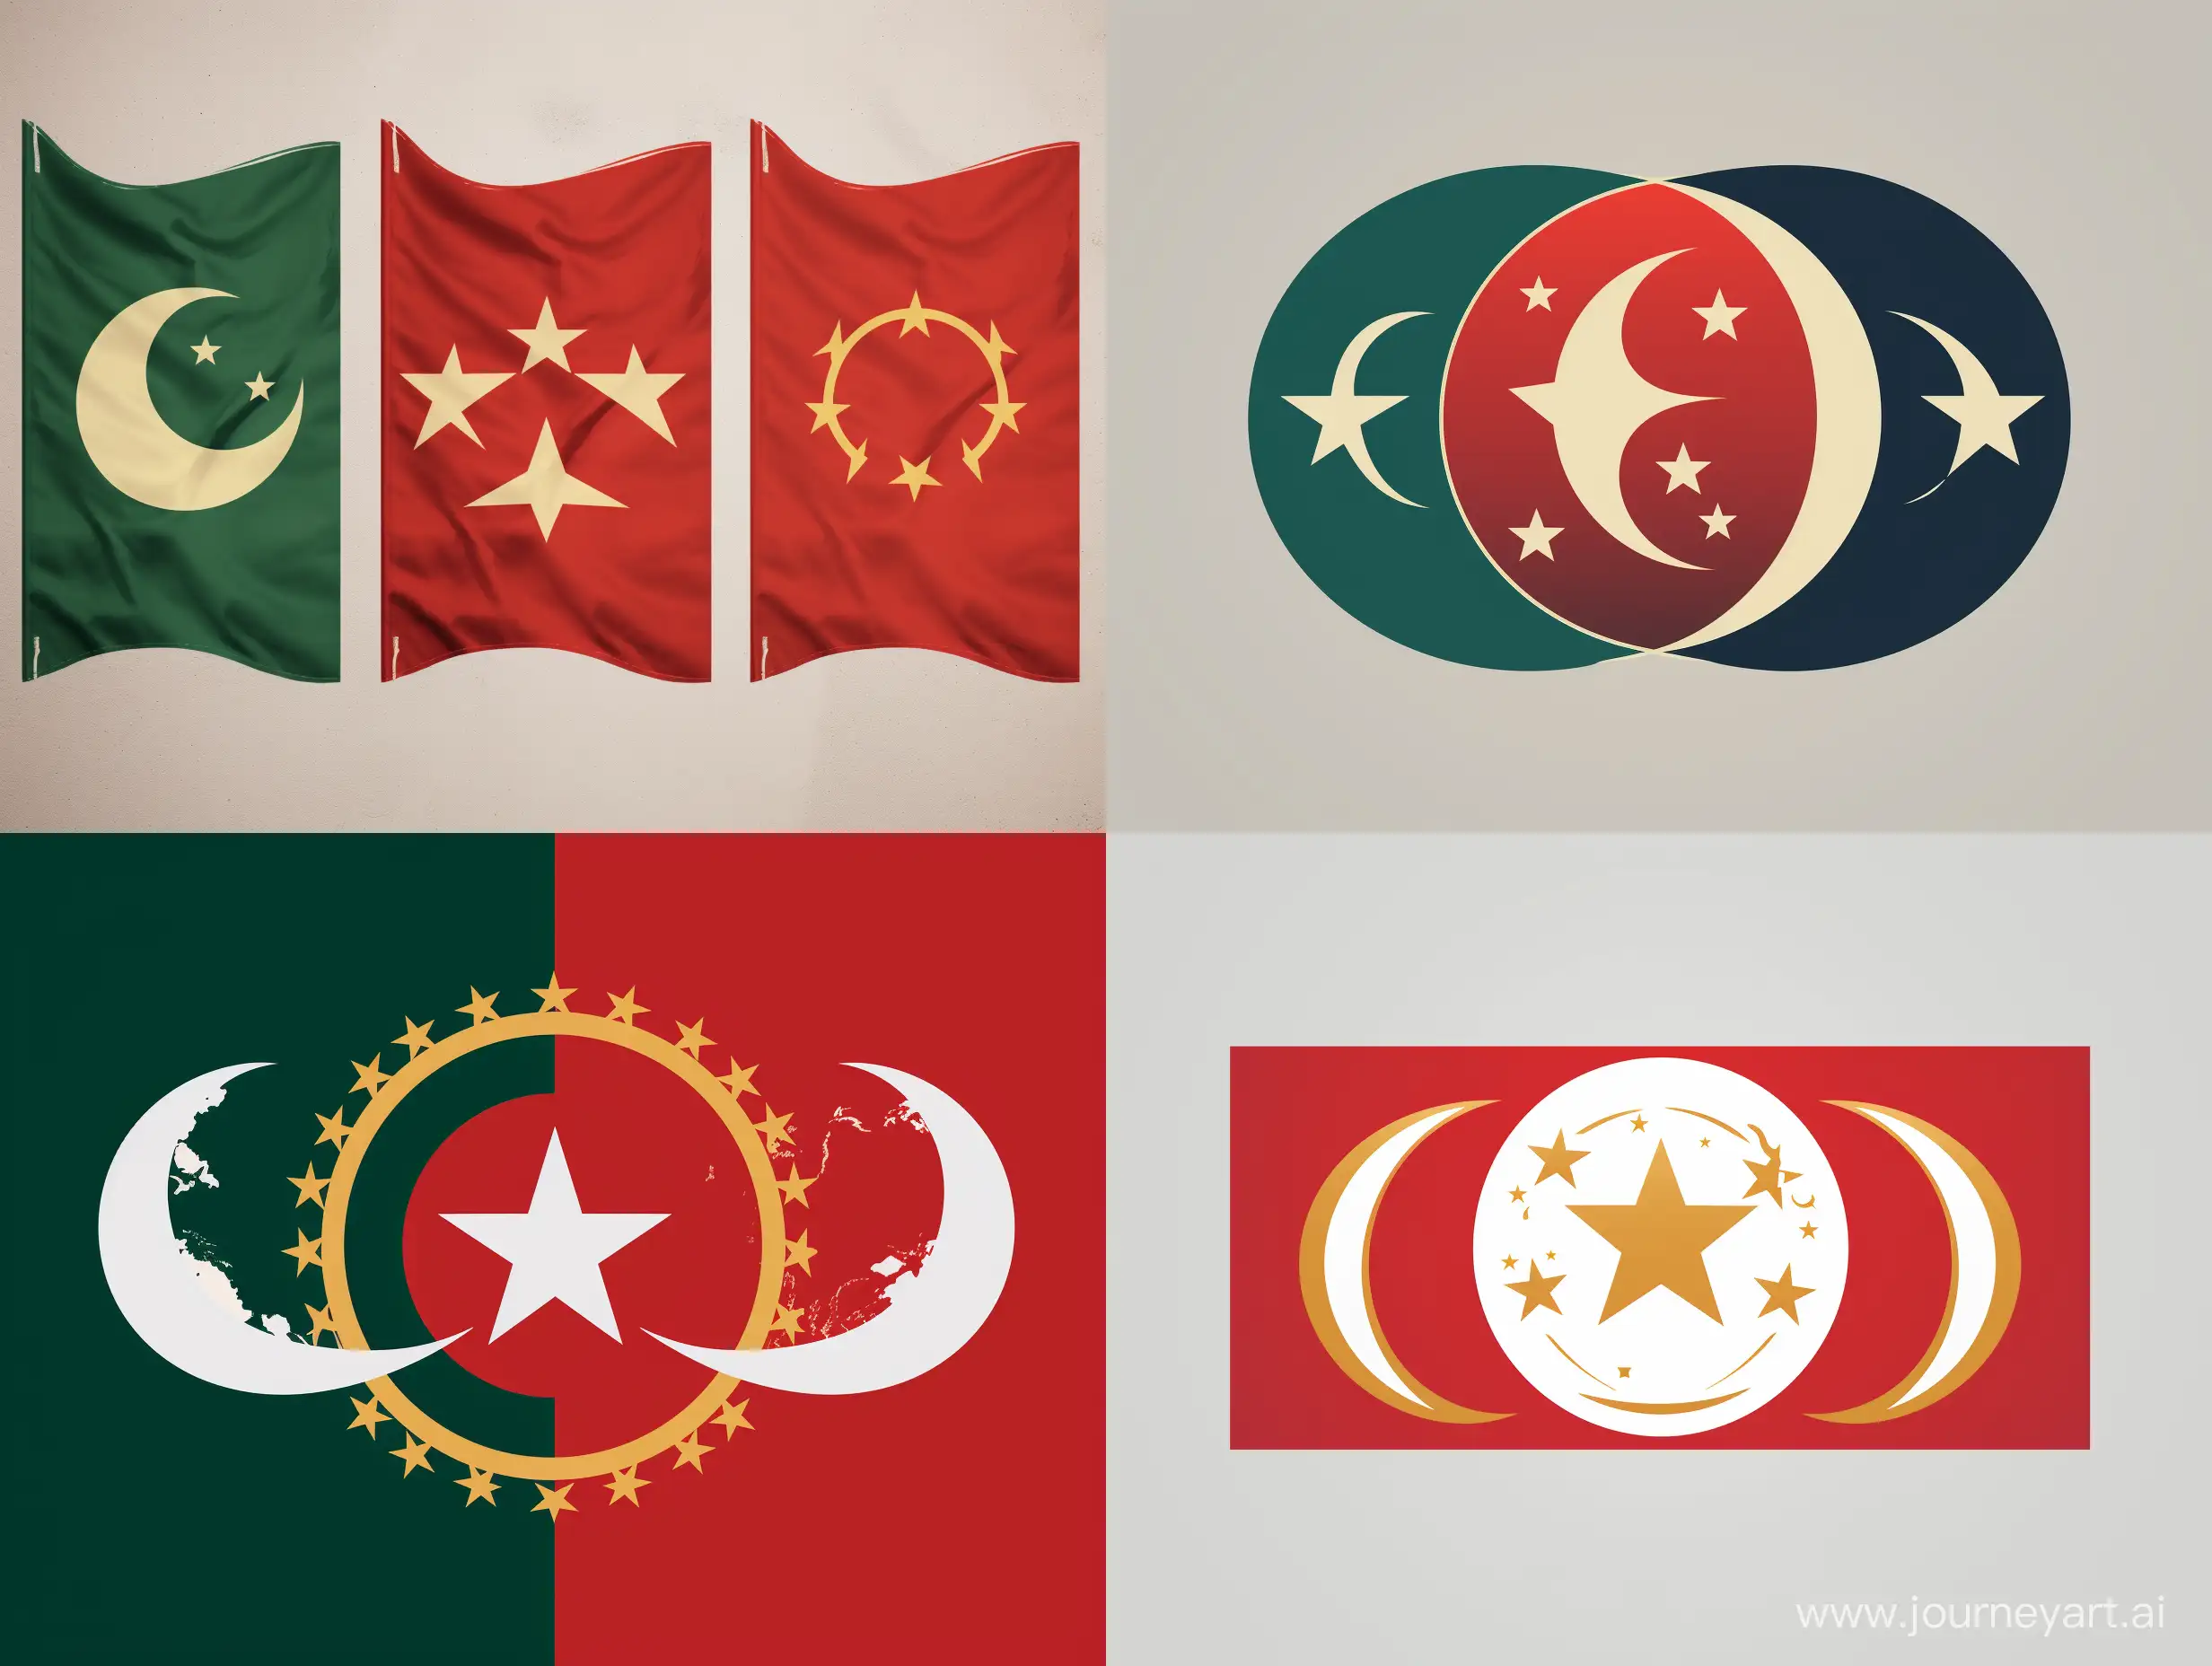 Logo design des 3 drapeaux Maroc, Algérie, Tunisie sur le même drapeau unis, c'est à dire les couleurs de l'Algérie, le croissant de lune de la Tunisie et l'étoile du Maroc et qu'on voit bien que ça concerne ces 3 pays